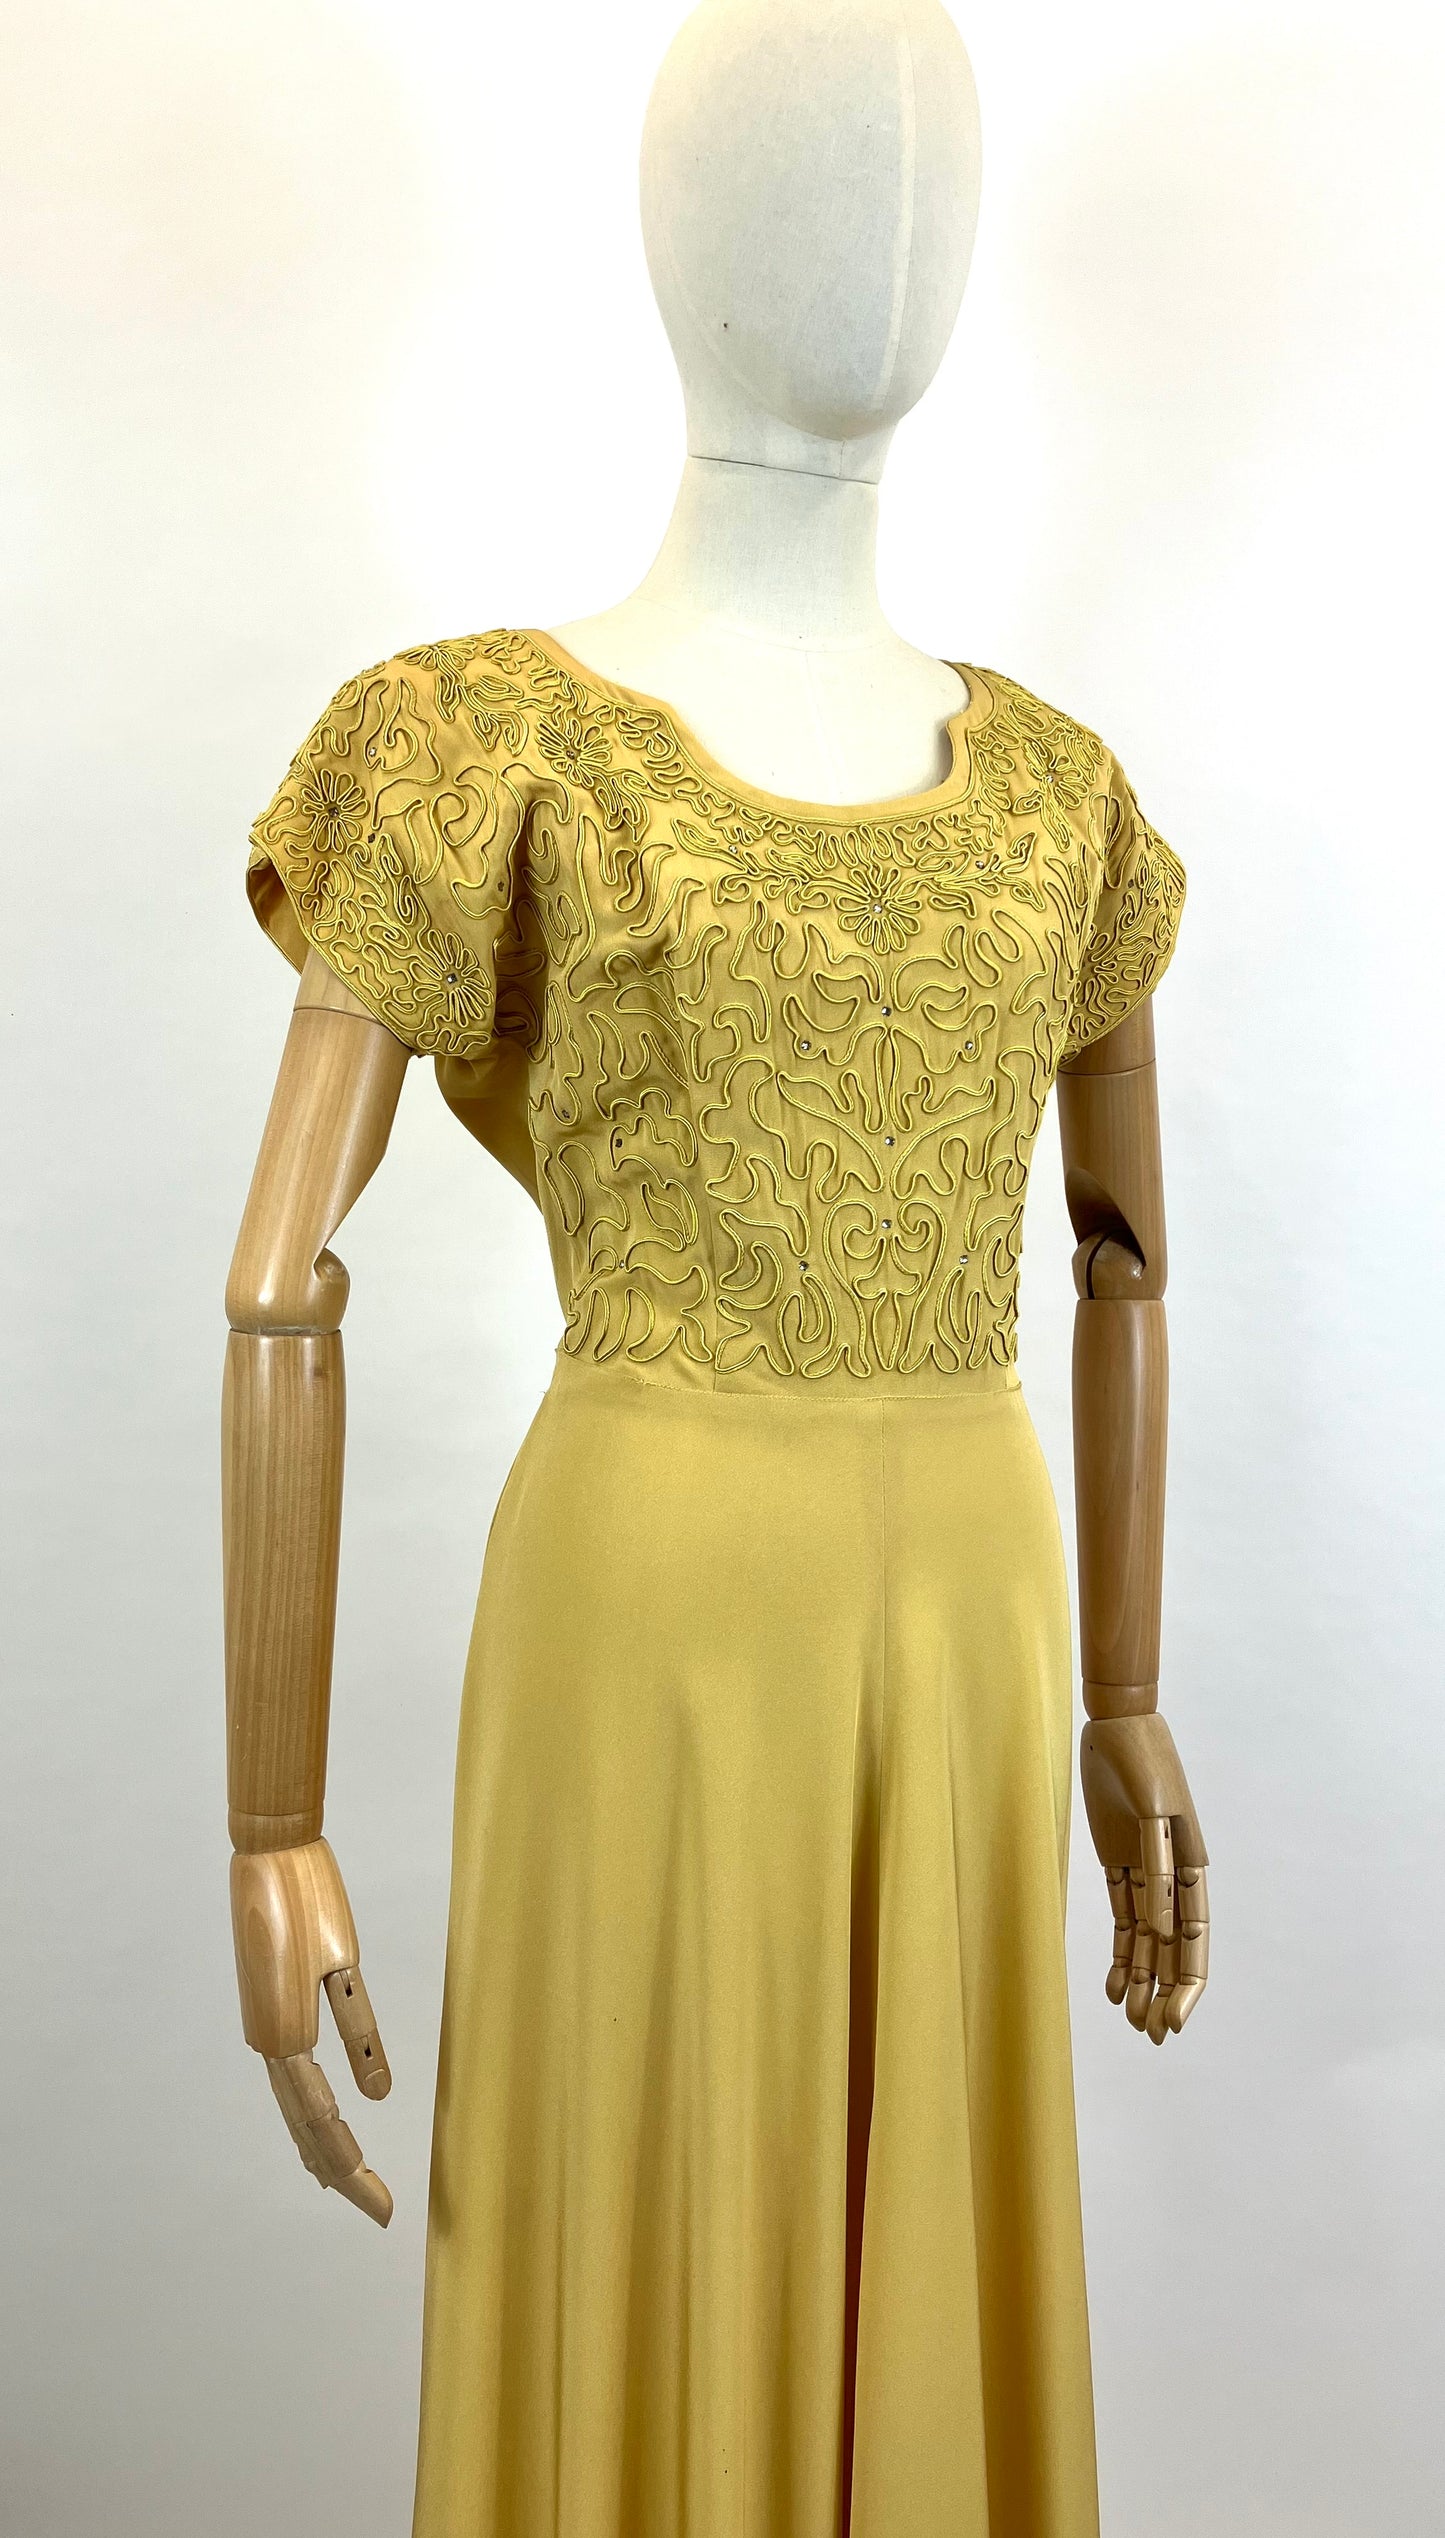 Original 1940’s Fabulous Evening Gown - Soft Mustard